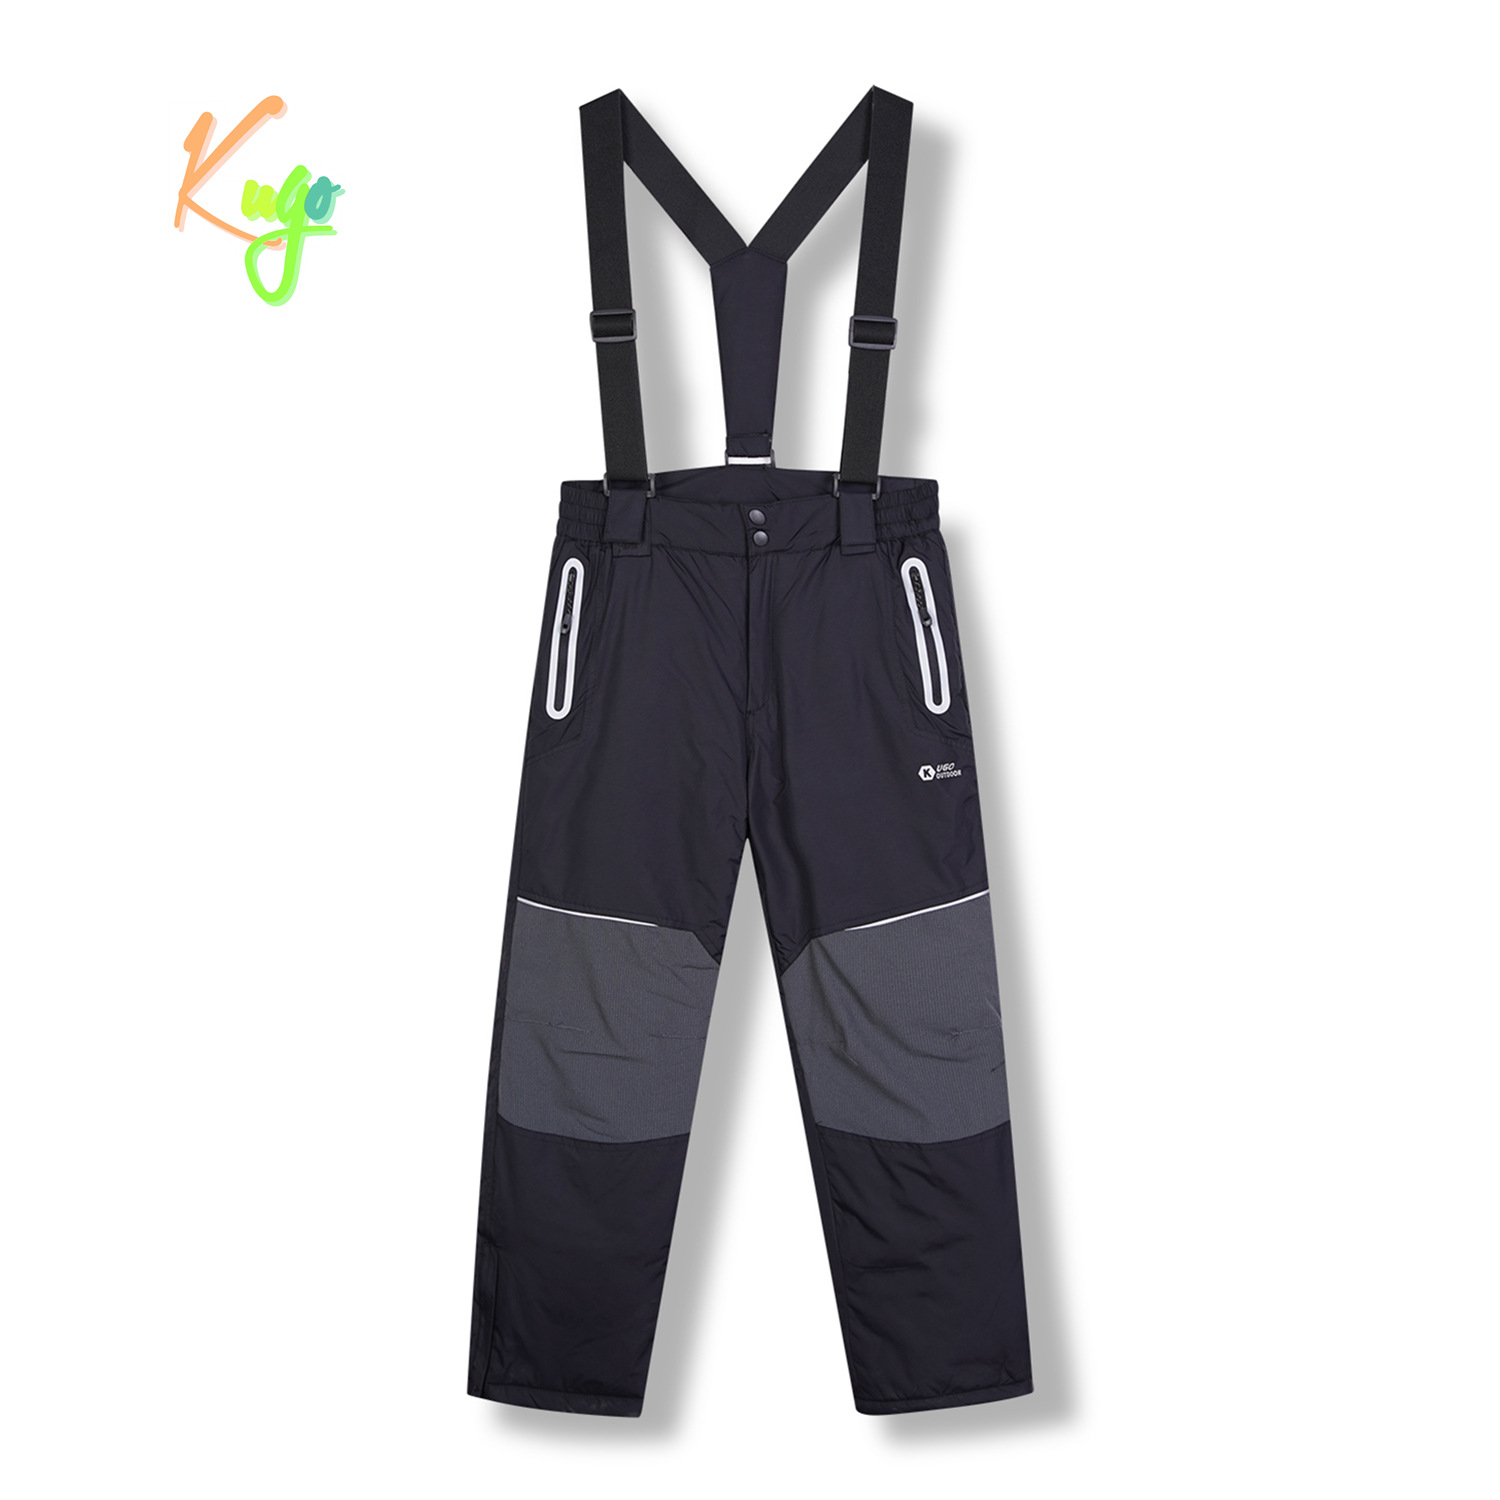 Chlapecké lyžařské kalhoty - KUGO DK8231, černá / černé zipy Barva: Černá, Velikost: 140